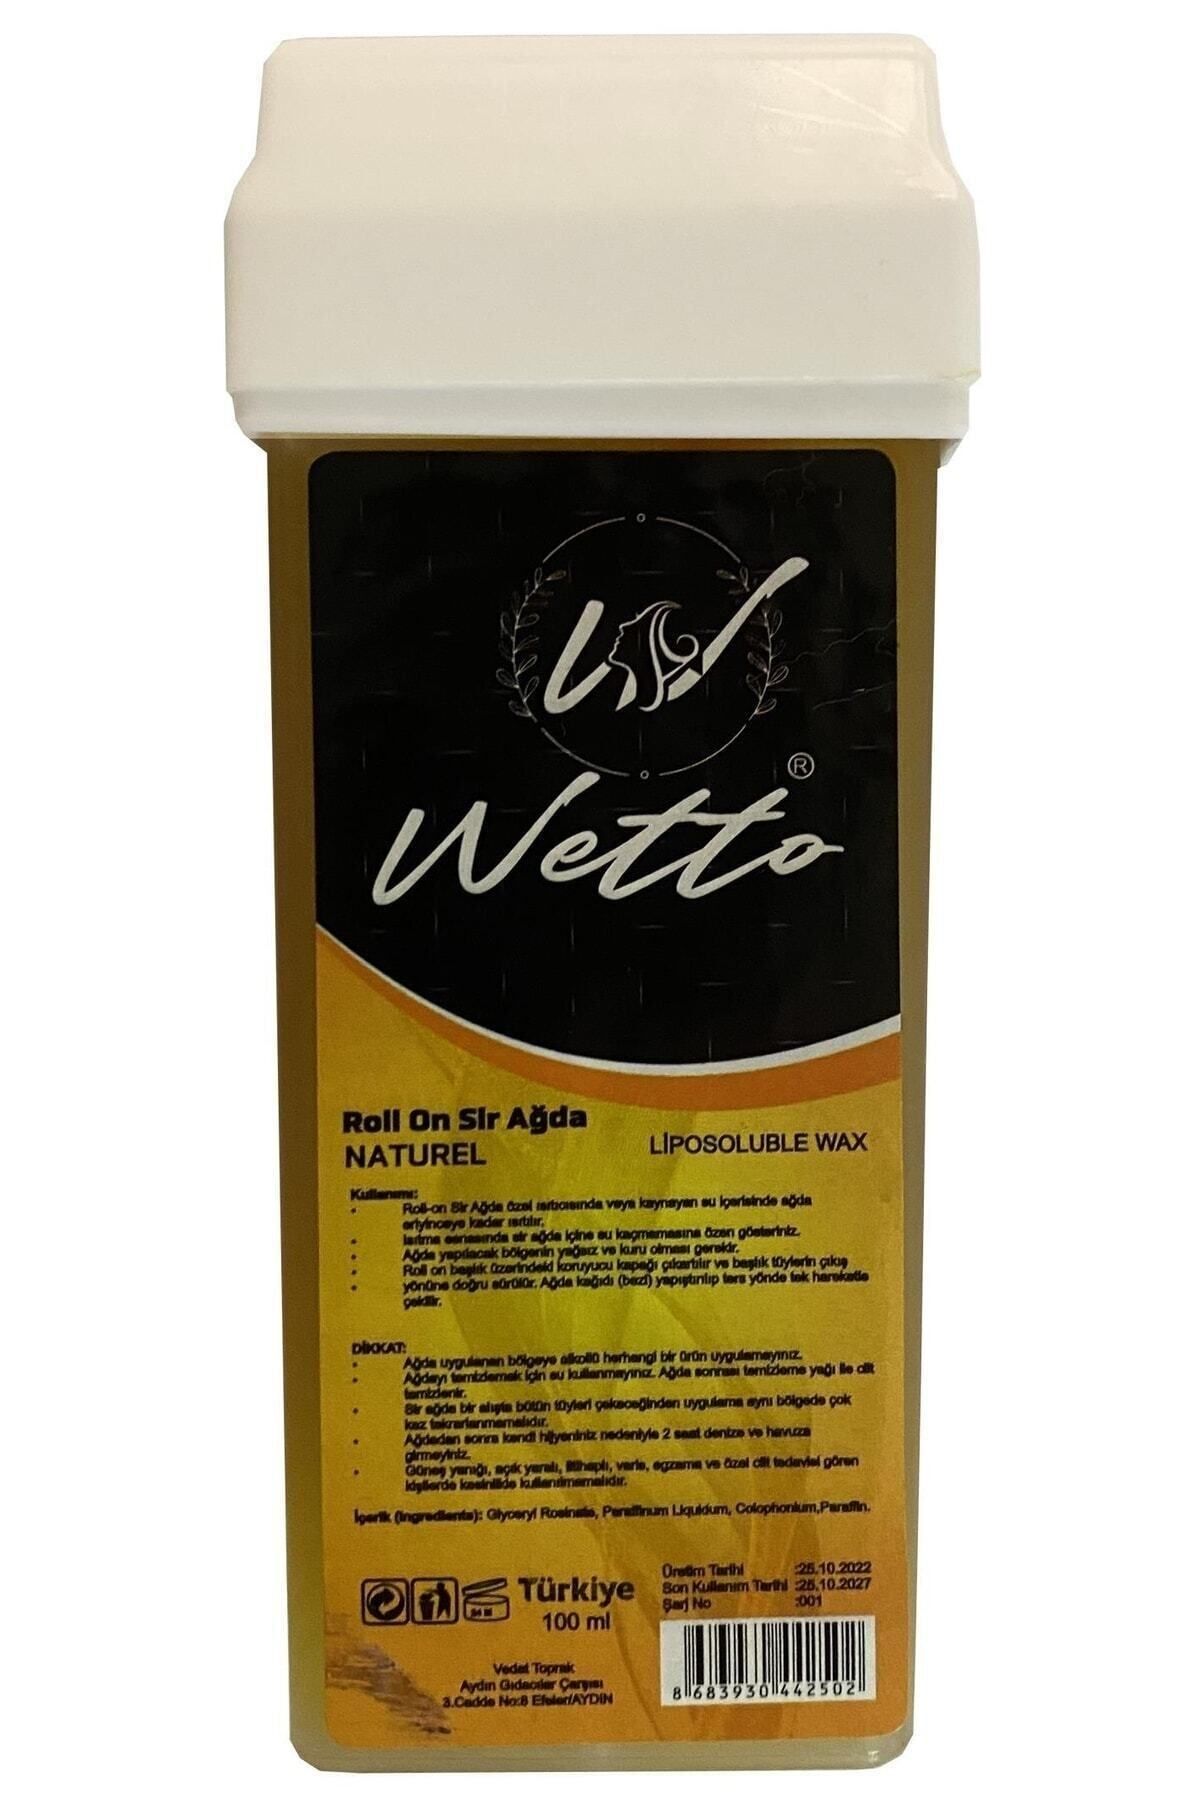 Wetto Professional Kartuş Ağda Naturel(SARI) 100 ml